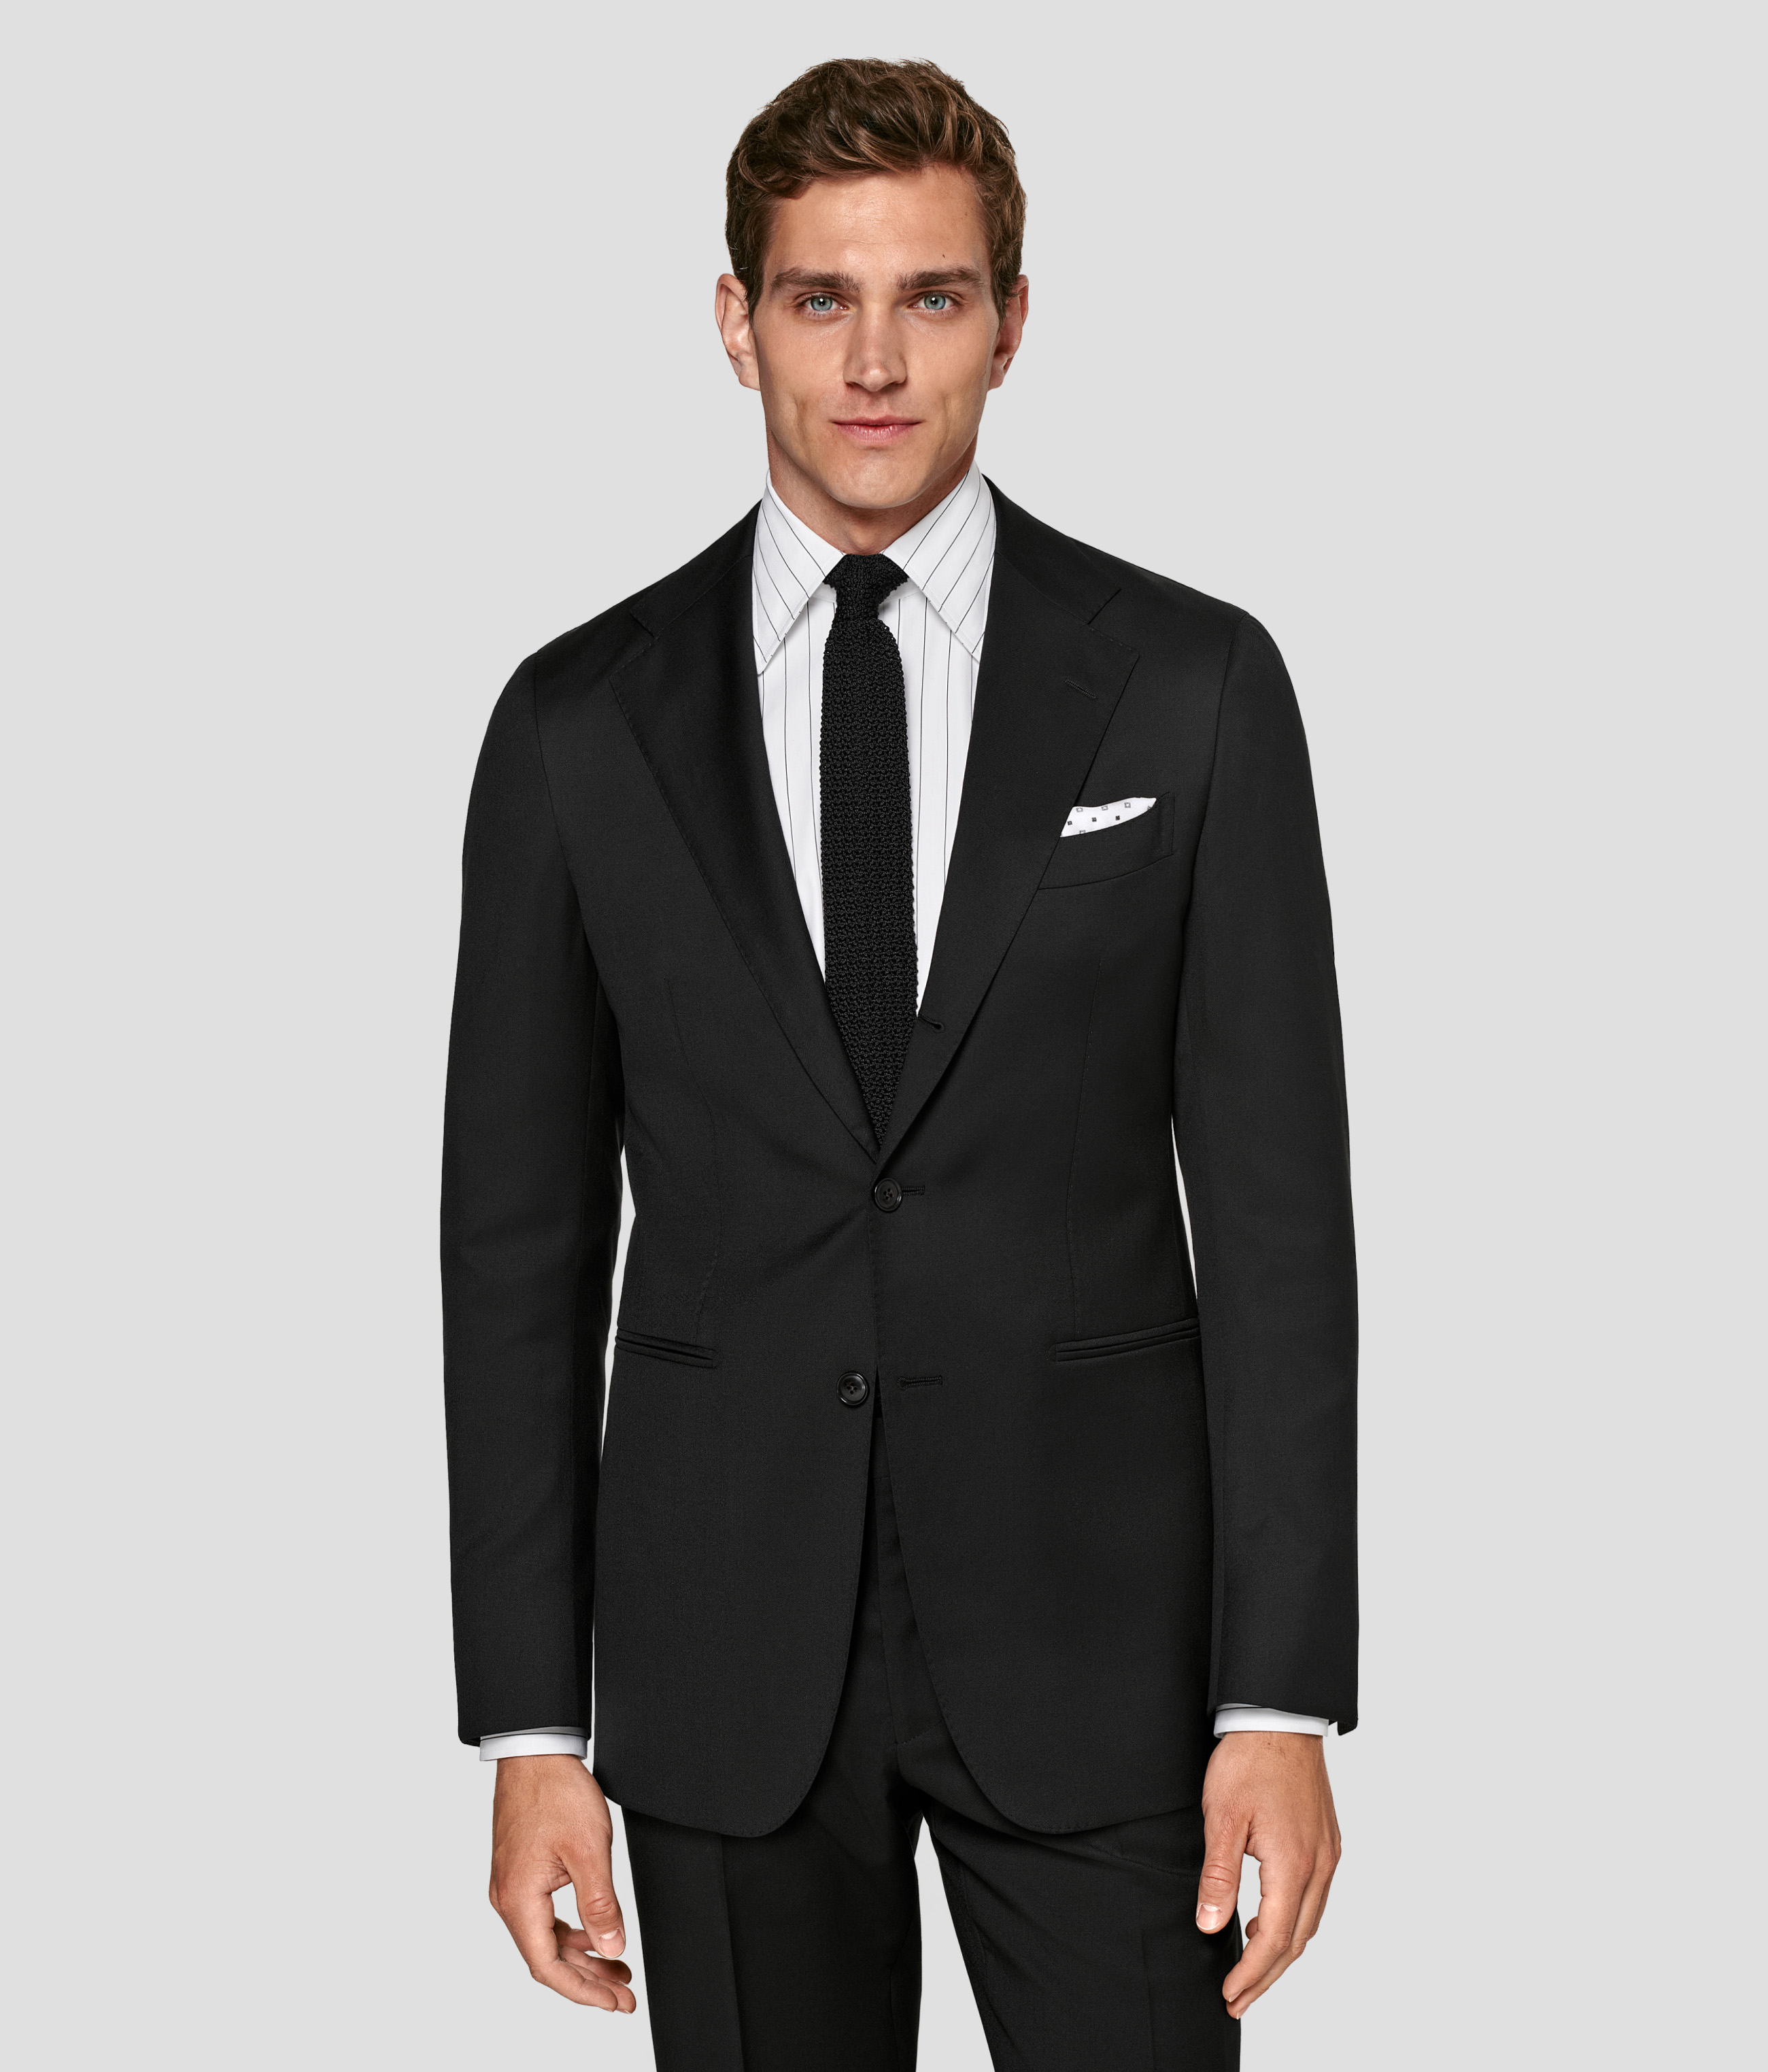 Men's Suits, Wedding, Formal & Custom Suits